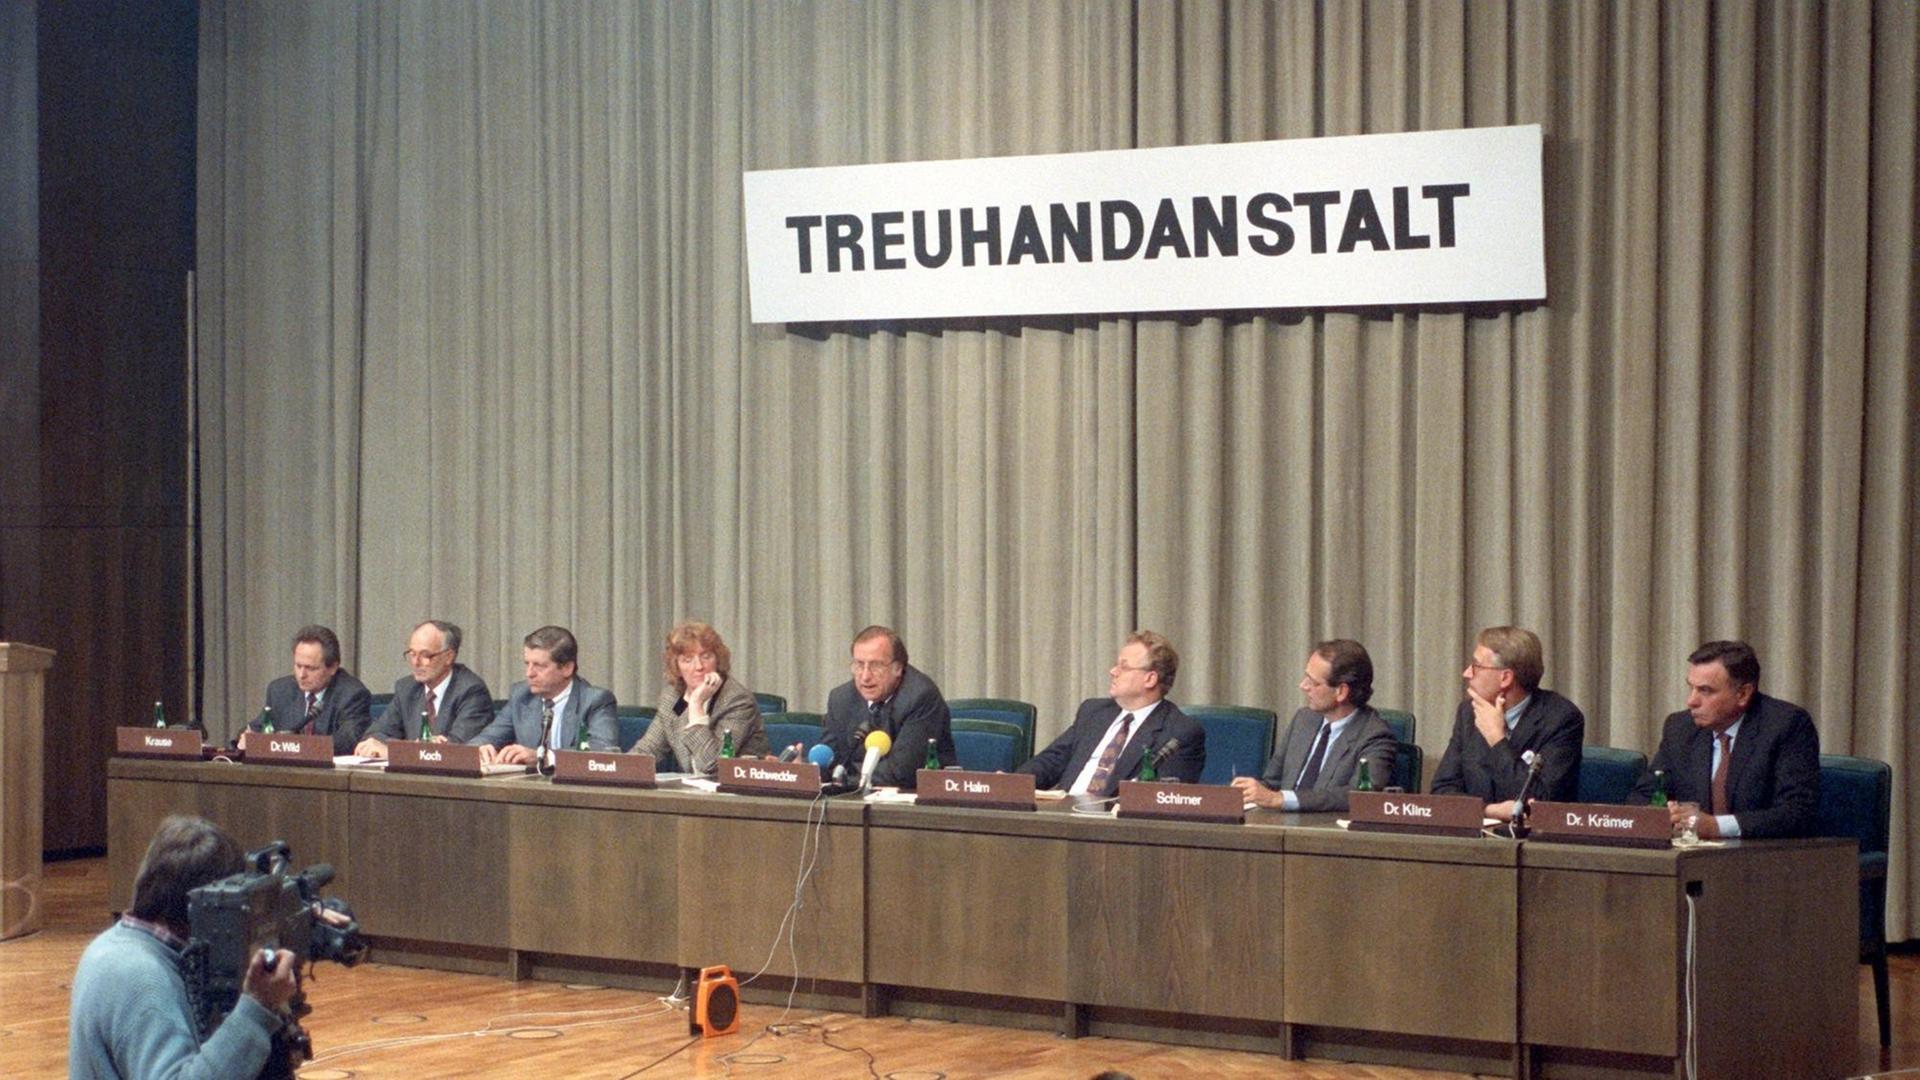 Eine Pressekonferenz der Treuhandanstalt mit dem deren Präsidenten Detlev Rohwedder am 27. November 1990 in Berlin.